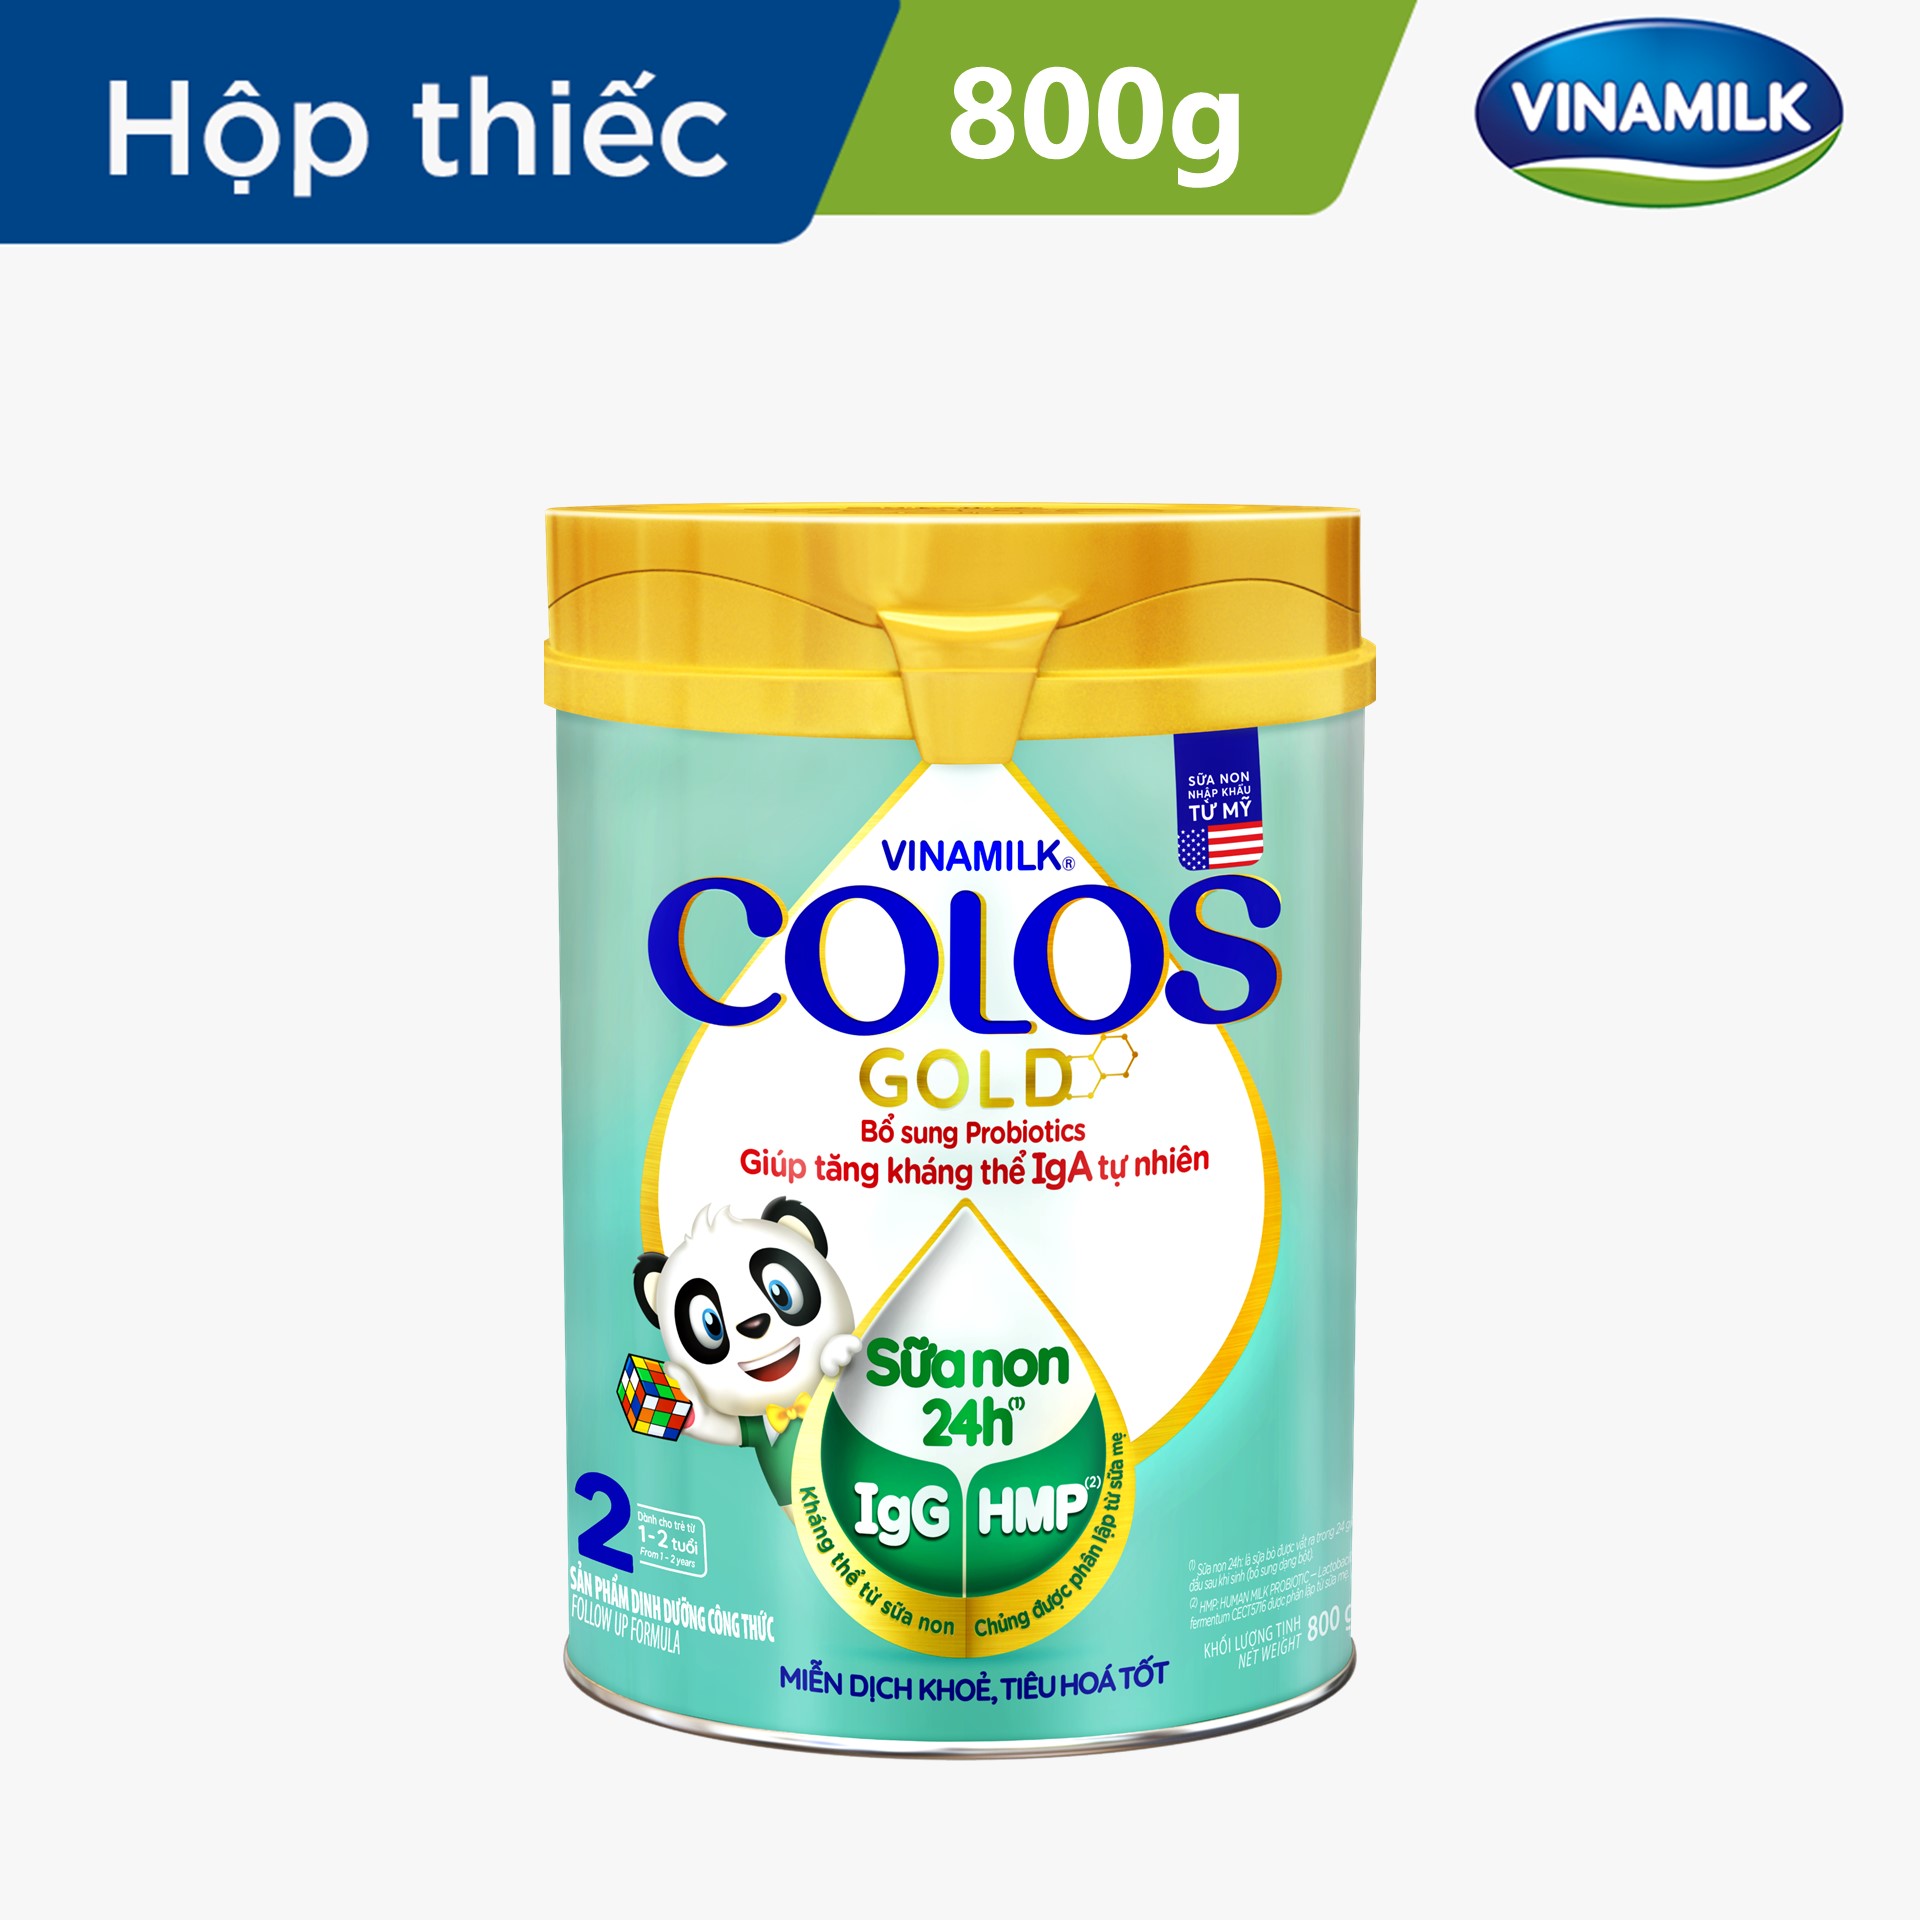 Sữa Non Vinamilk Colos Gold 2 800g (sữa bột cho trẻ từ 1 - 2 tuổi) - Miễn dịch khỏe, Bé lớn nhanh